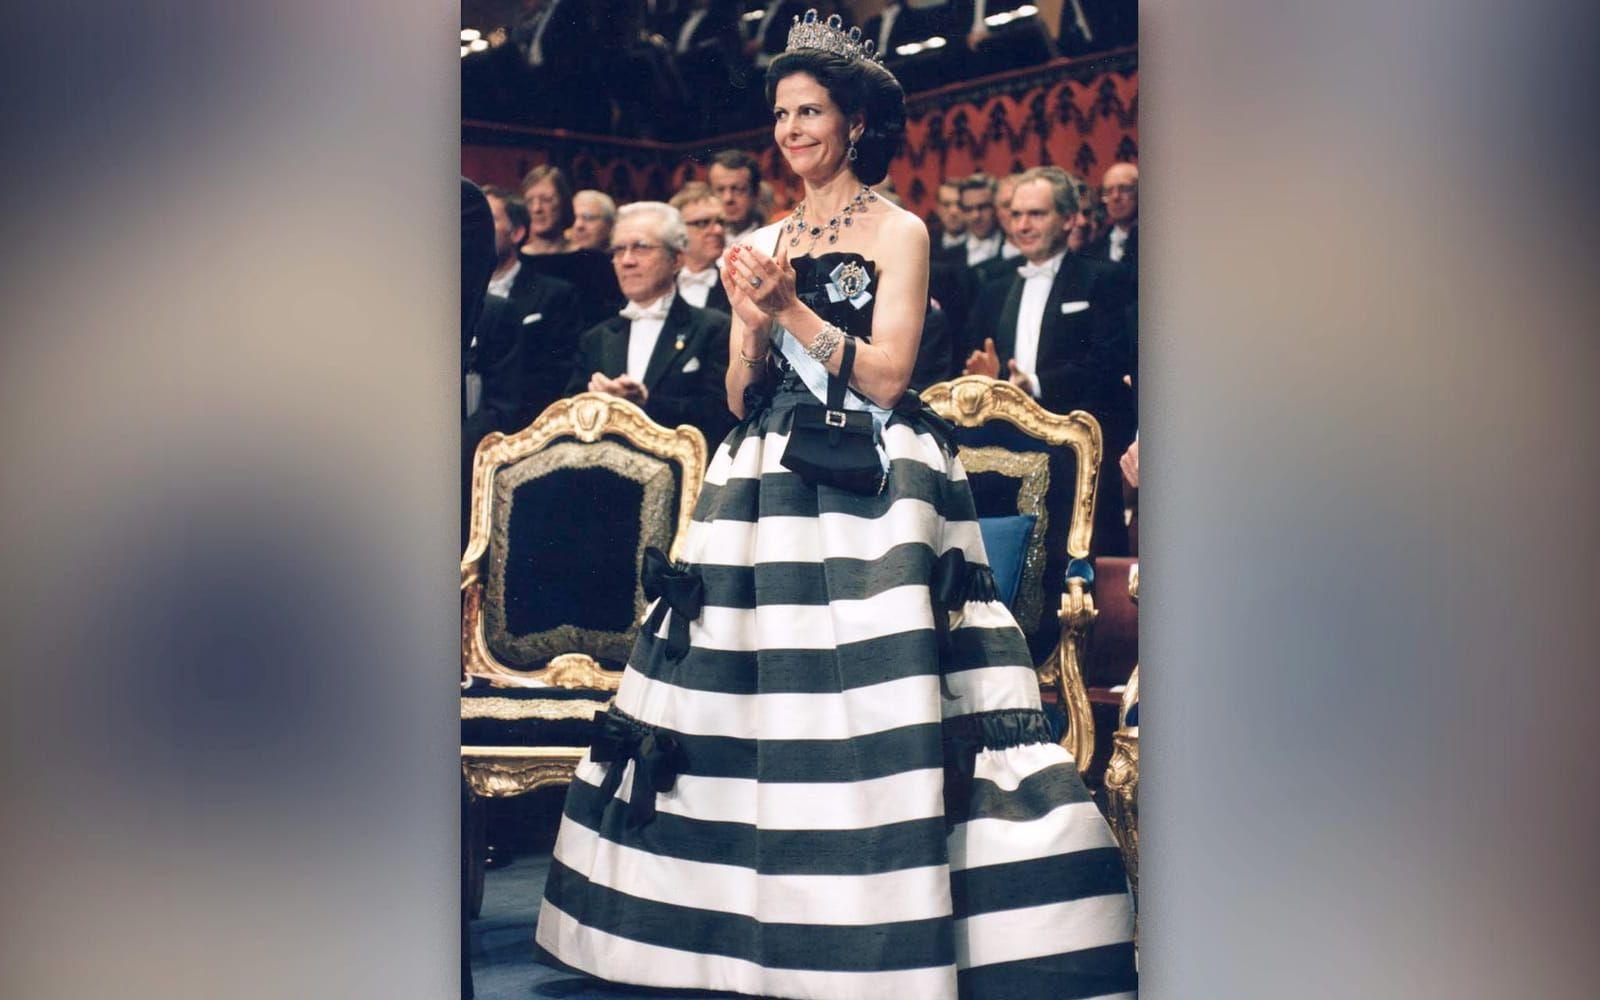 Man behöver inte vara färgstark för att sticka ut. Under Nobelfesten 2003 bar drottning Silvia en svartvit-randig klänning som närmast förde tankarna till bröderna Dalton på rymmen. Klänningen var designad av Nina Ricci och lär vara en av hennes personliga favoriter.